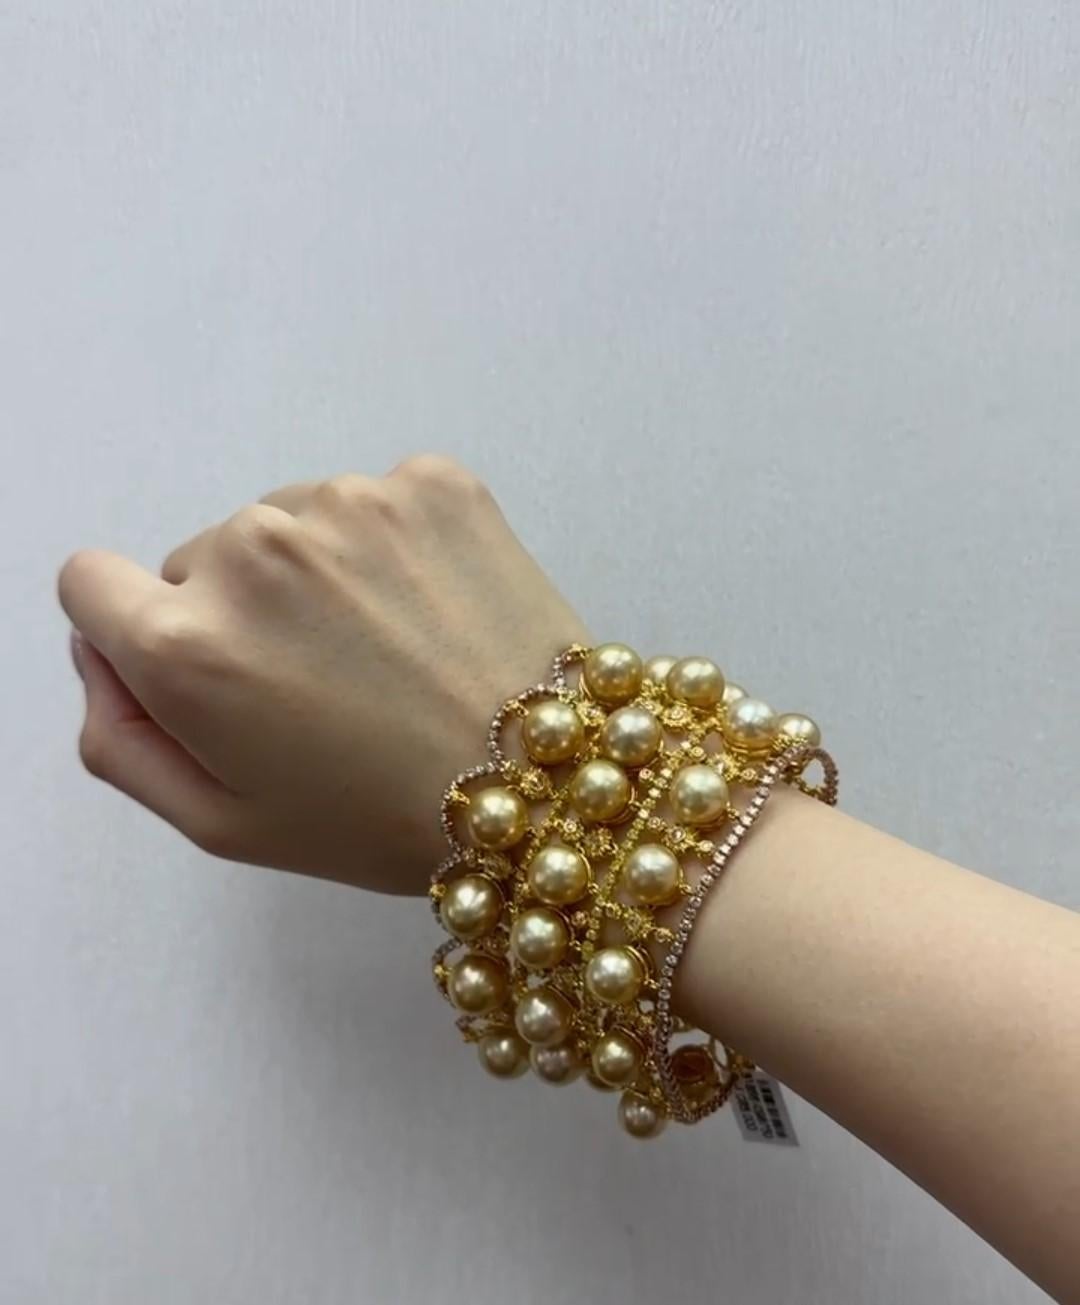 Das folgende Element, das wir anbieten, ist dieses schöne seltene wichtige 18KT Gold Fancy große goldene Perle und Fancy gelbe Diamant-Armband. Das Armband besteht aus 34 prächtigen 9-11MM hochglänzenden großen AA-AAA GOLDEN PRISTINE SOUTH SEA